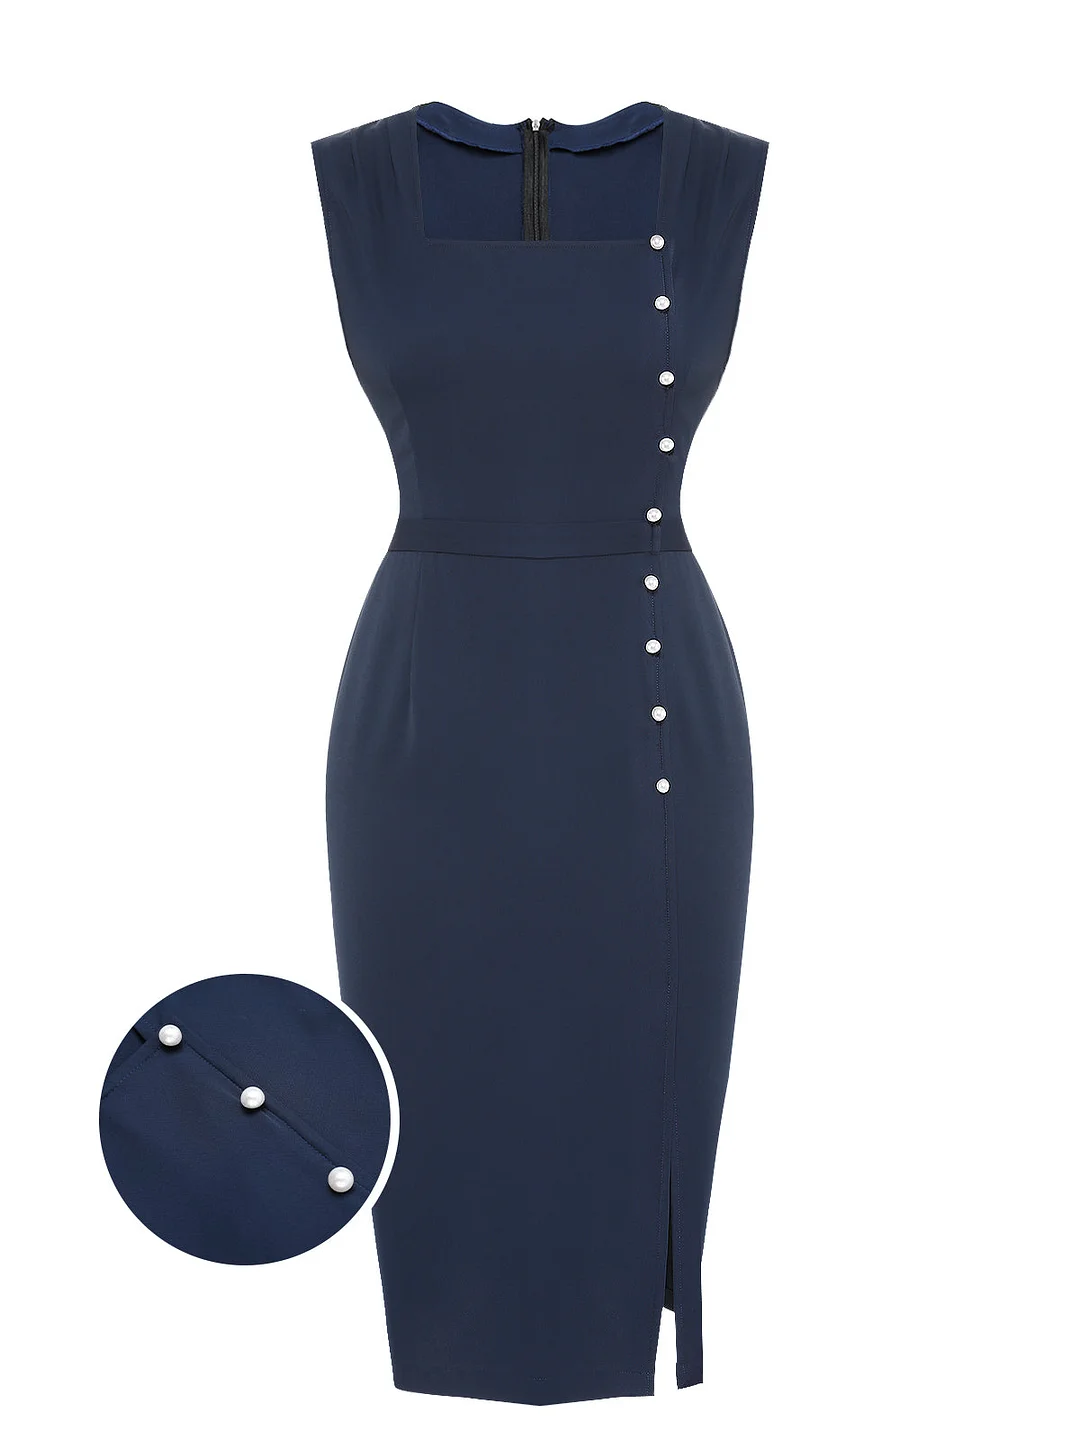 Navy Blue 1960s Decorative Button Pencil Dress